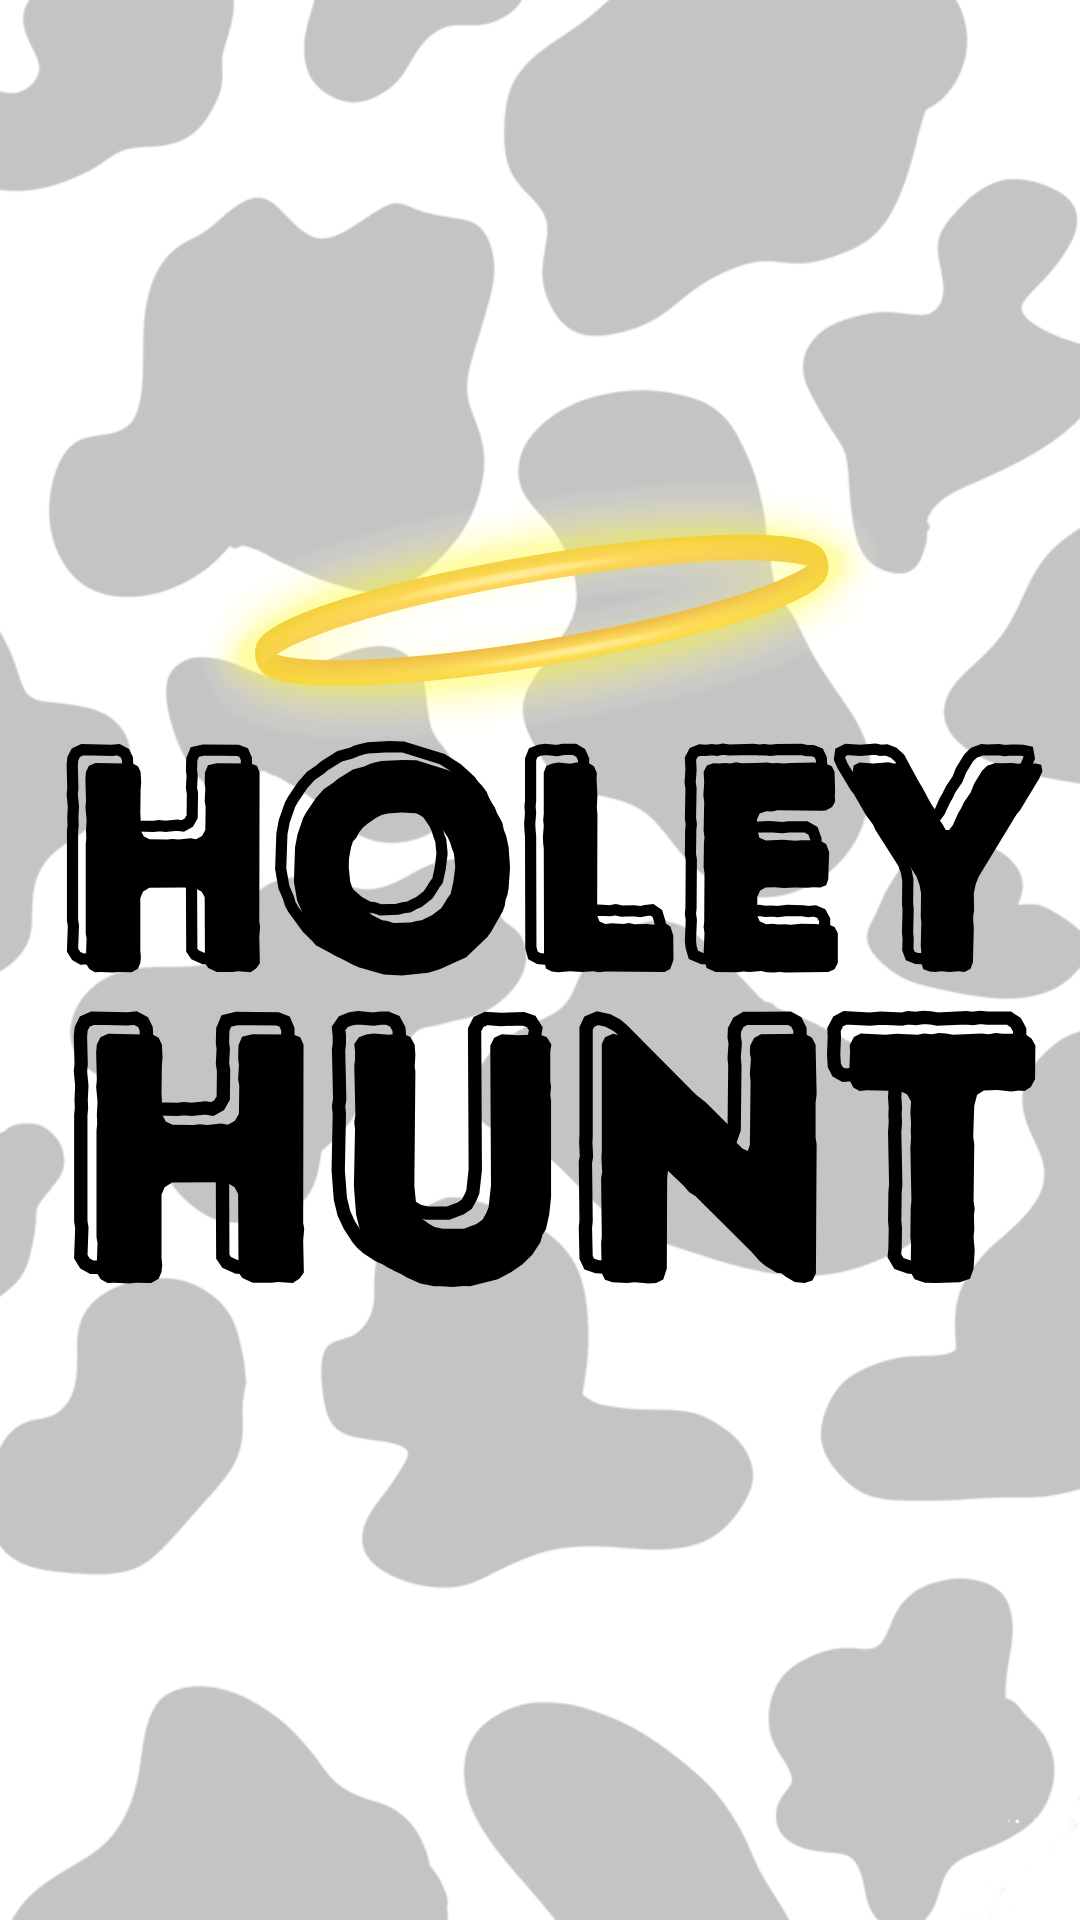 Holey Hunt